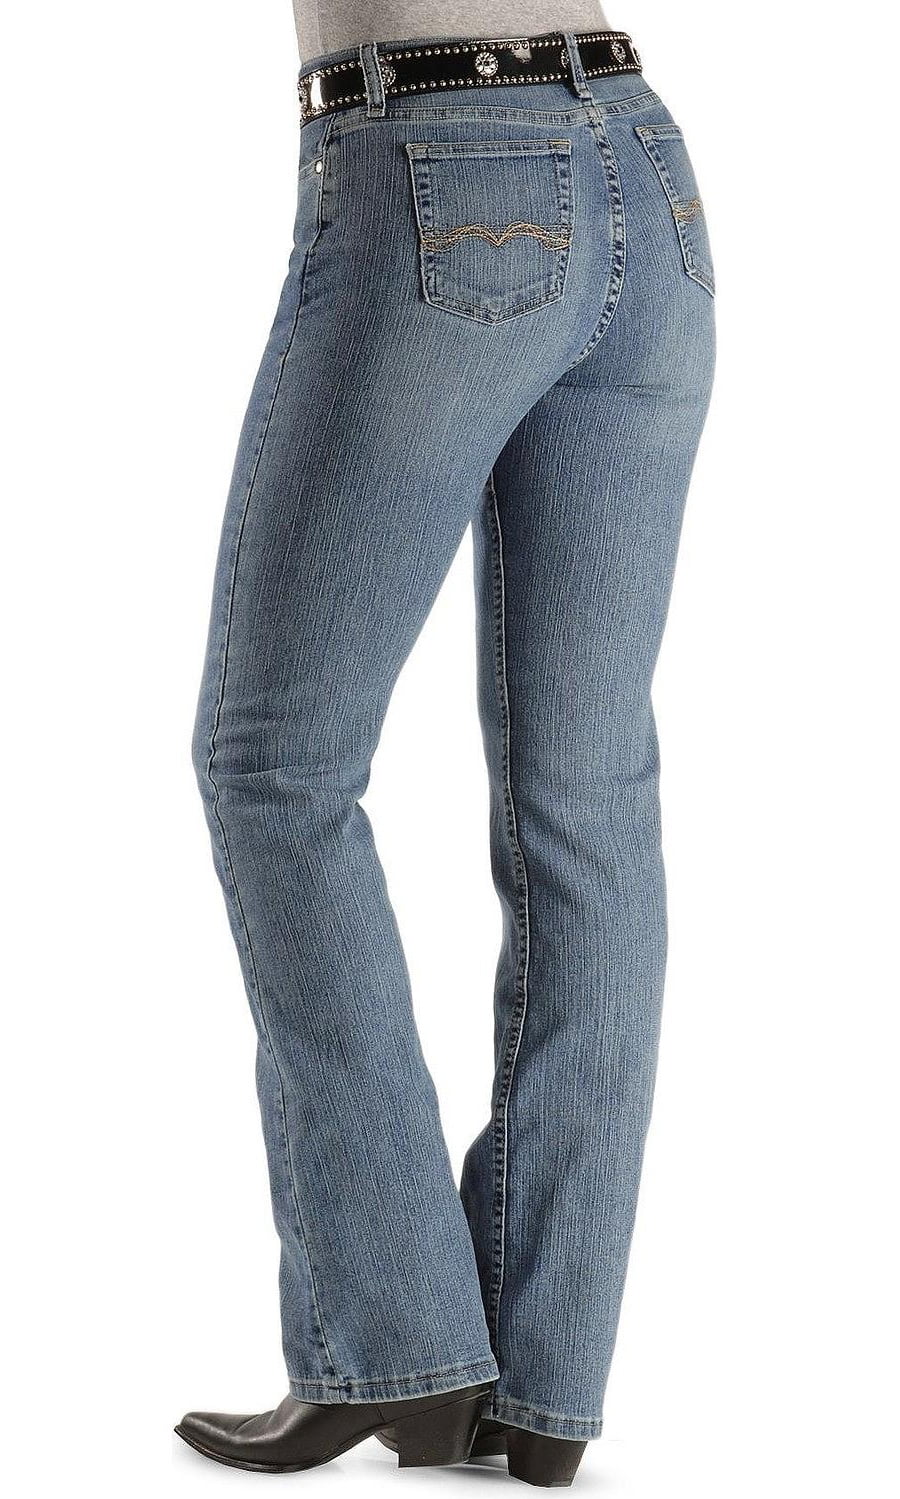 paige jeans size 30